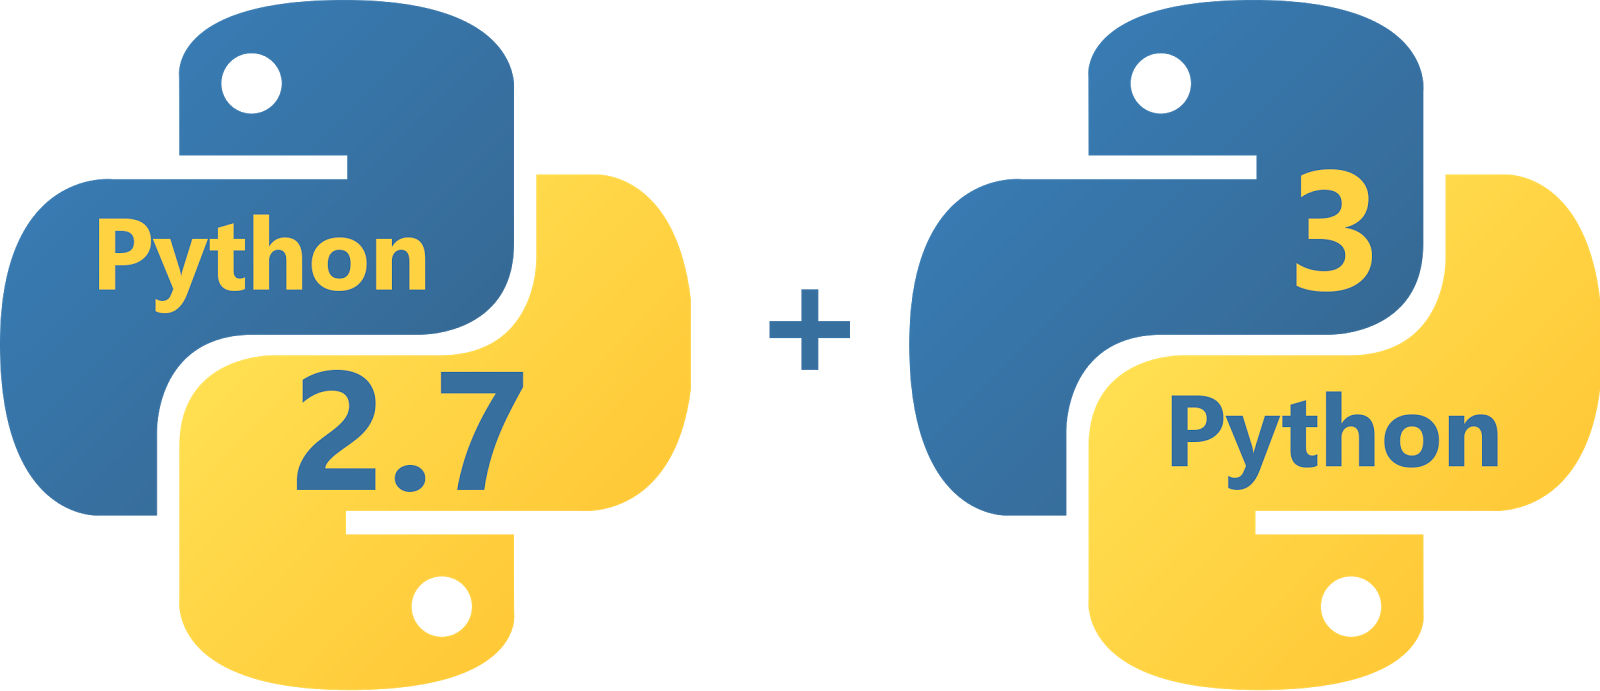 Логотип языка python. Python язык программирования логотип. Питон язык программирования лого. Python программирование логотип. Питон язык программирования PNG.